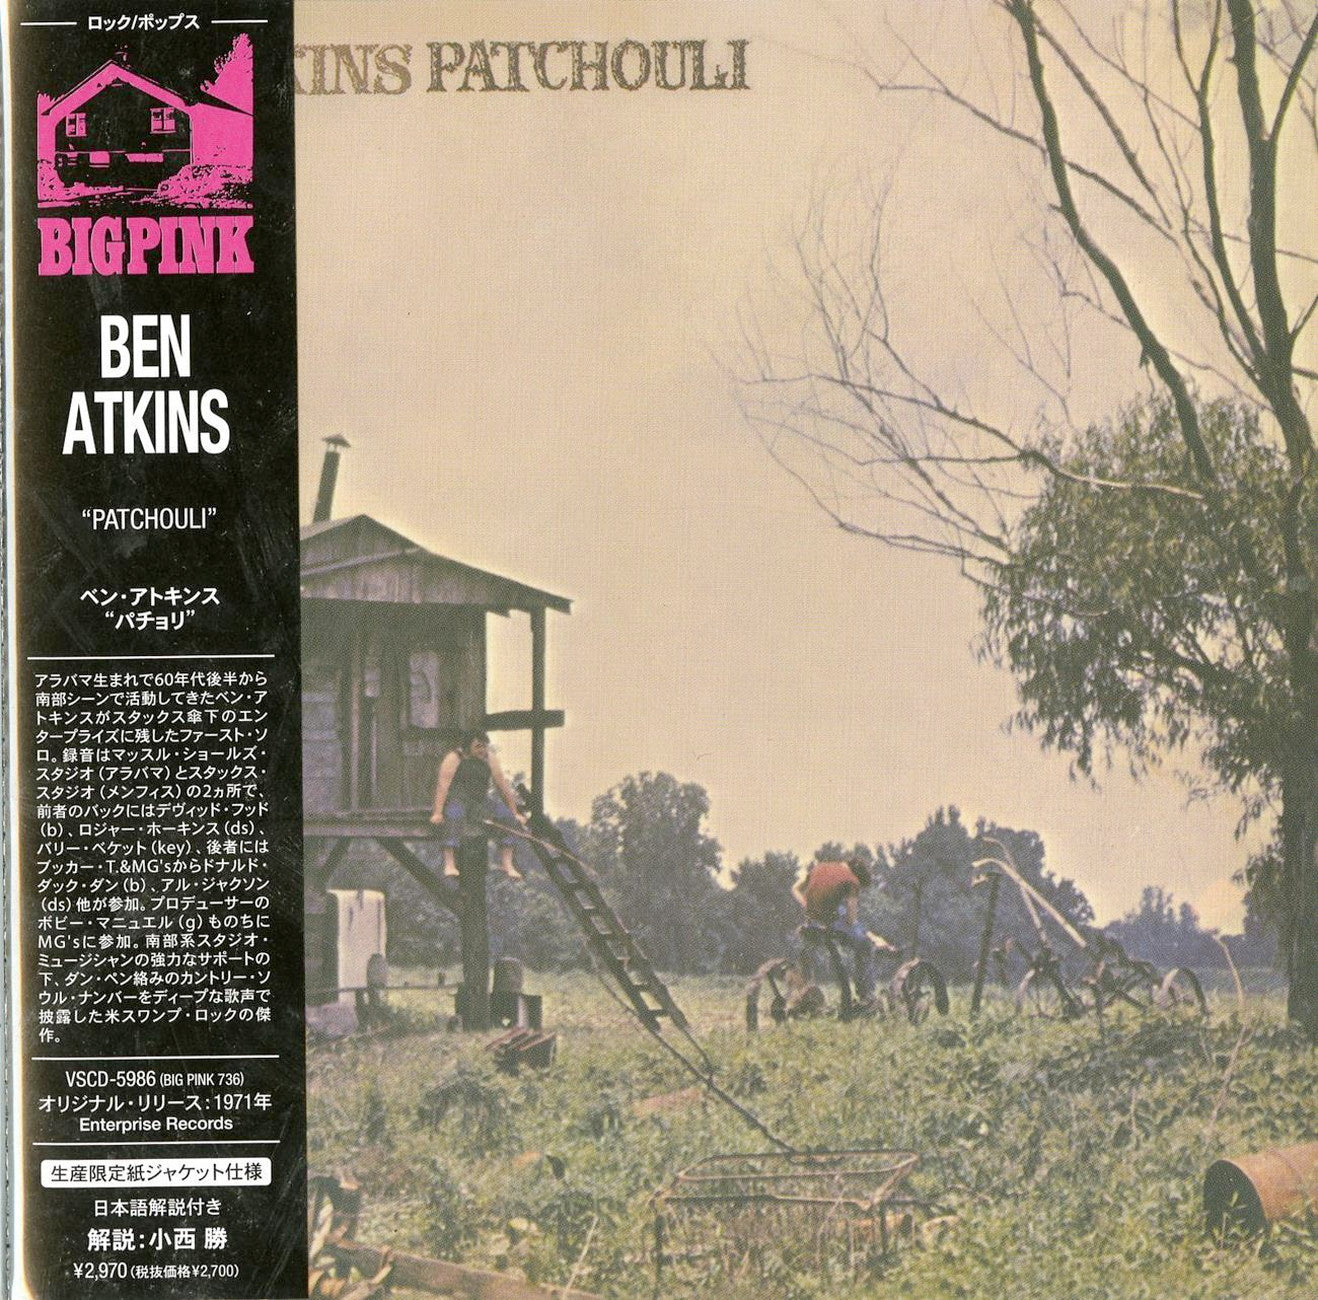 Ben Atkins - Patchouli - Import Mini LP CD Limited Edition